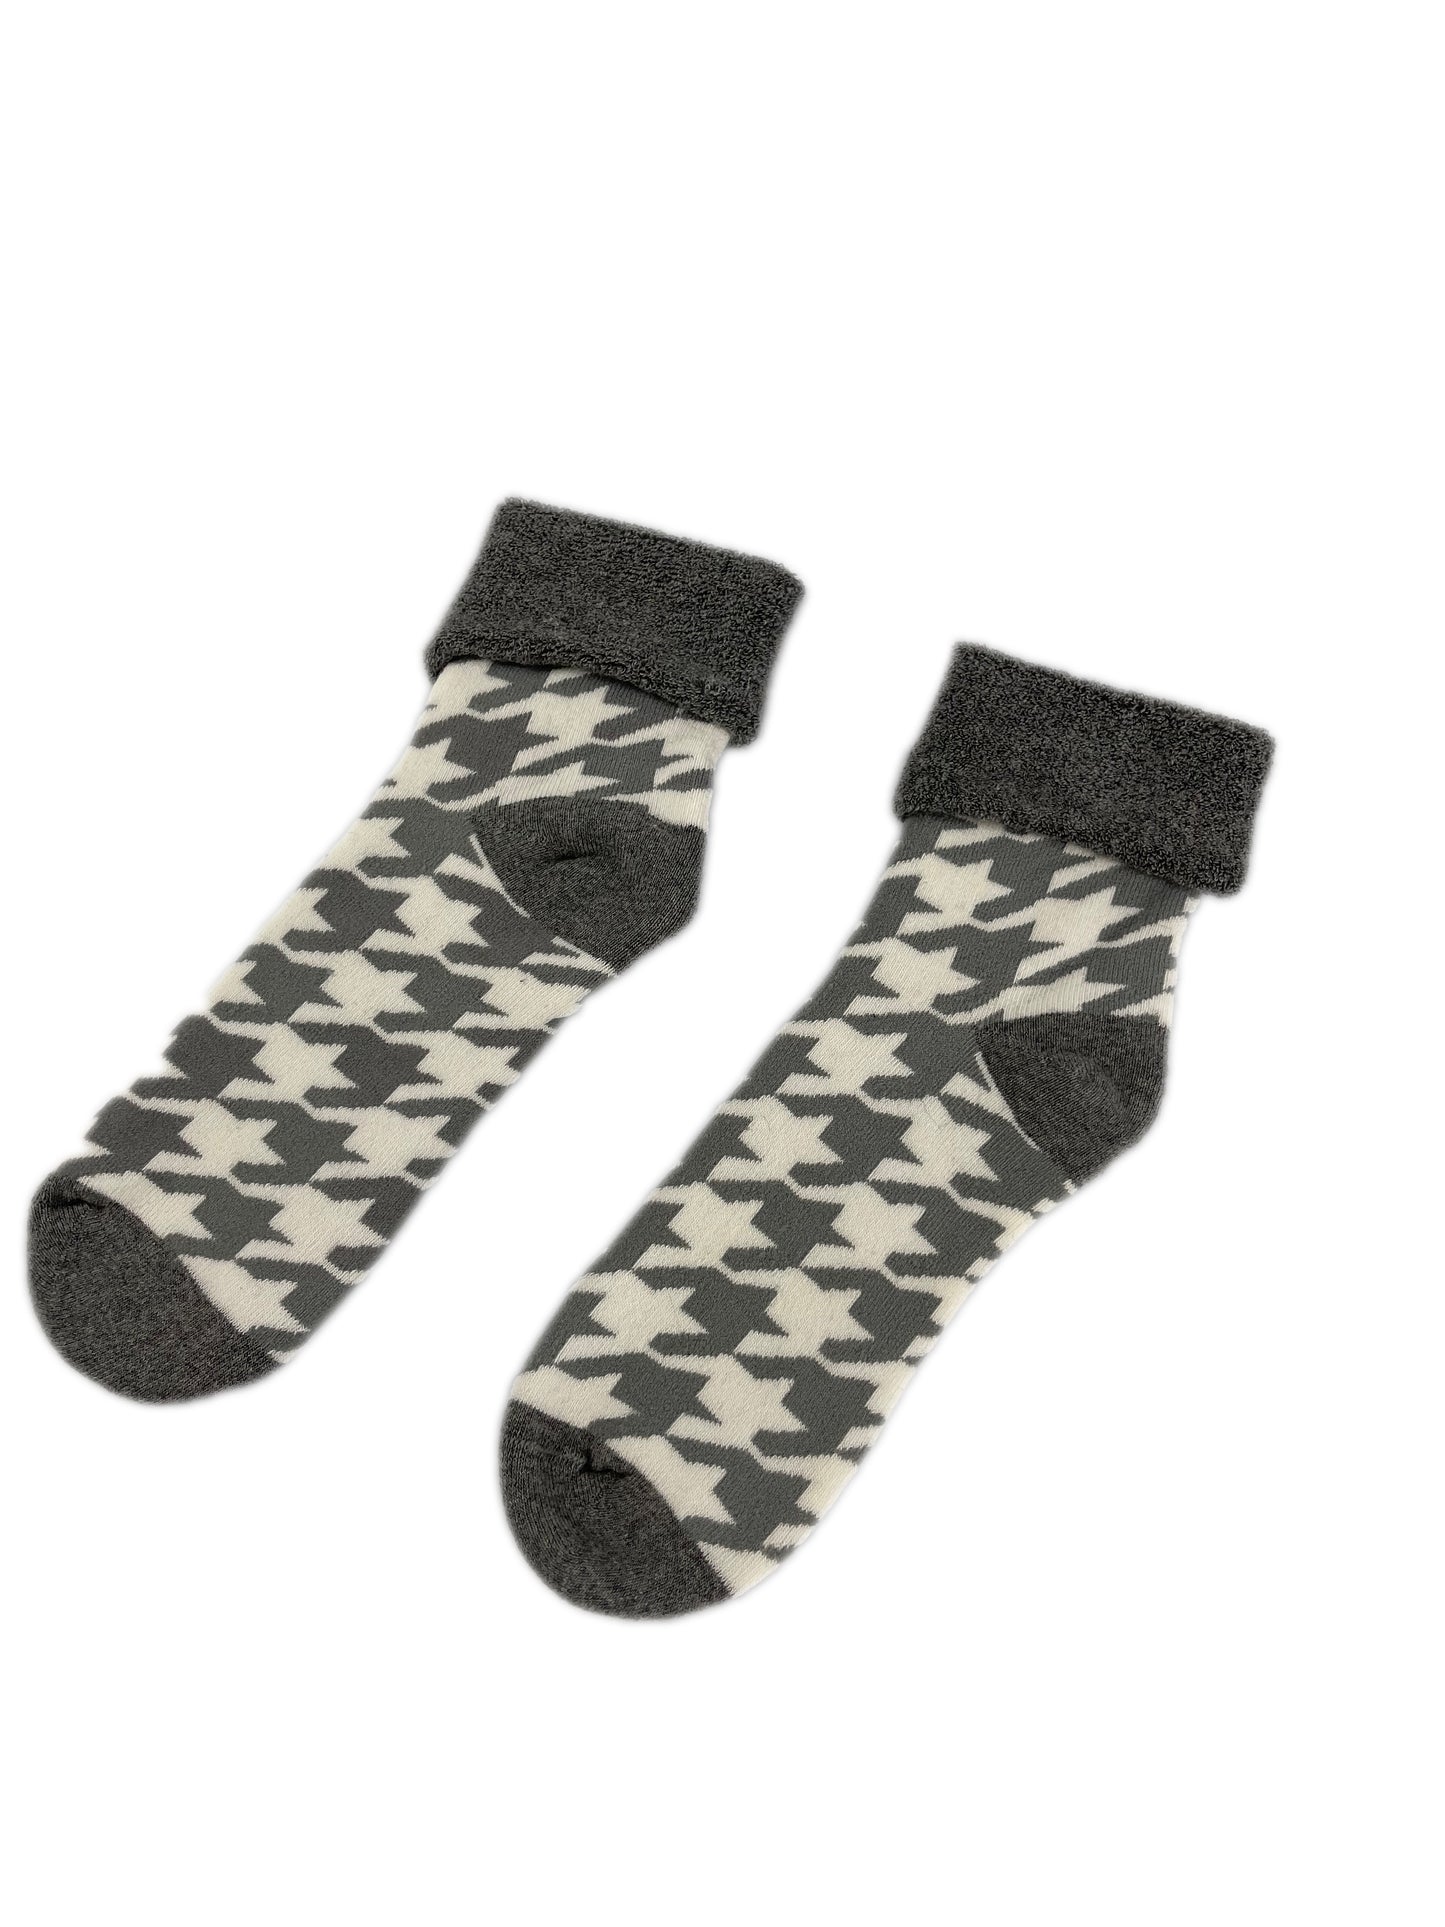 Kaz ayağı desenli peluşlu havlu çorap